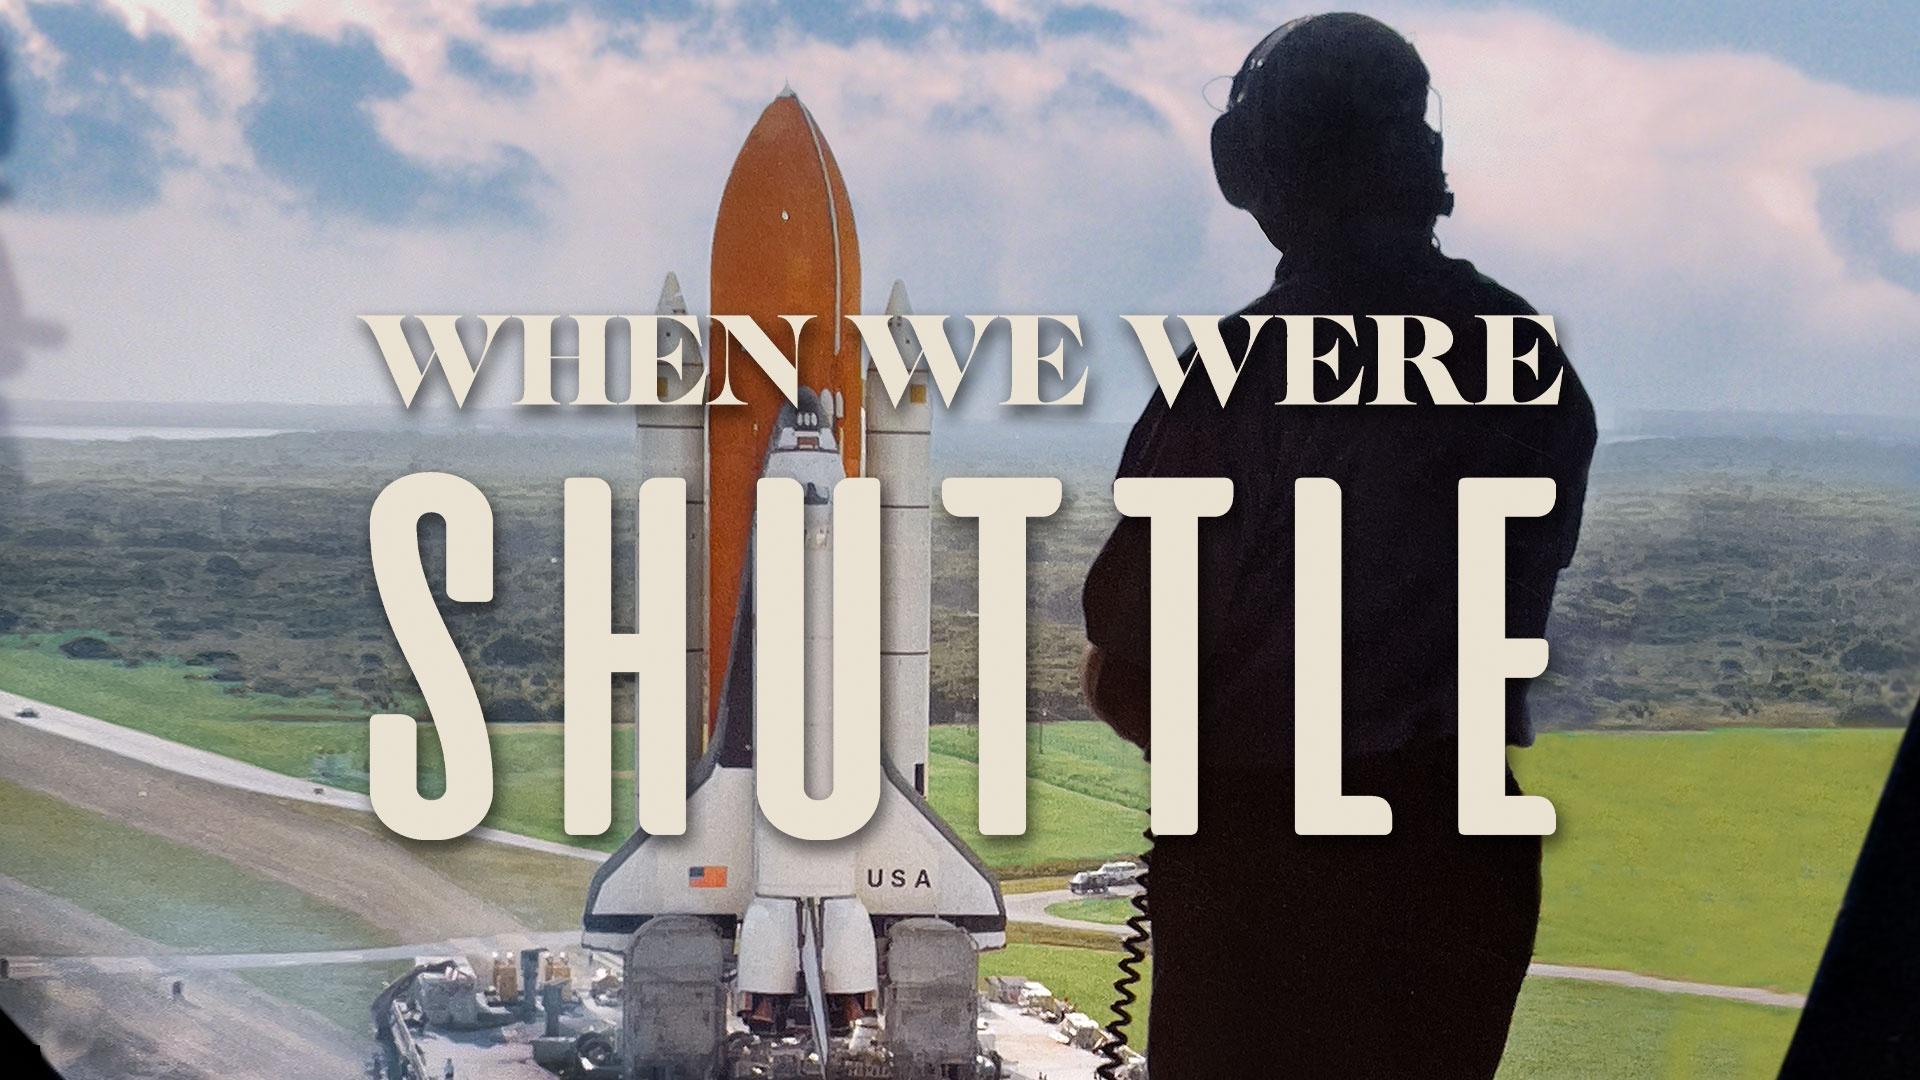 When We Were Shuttle